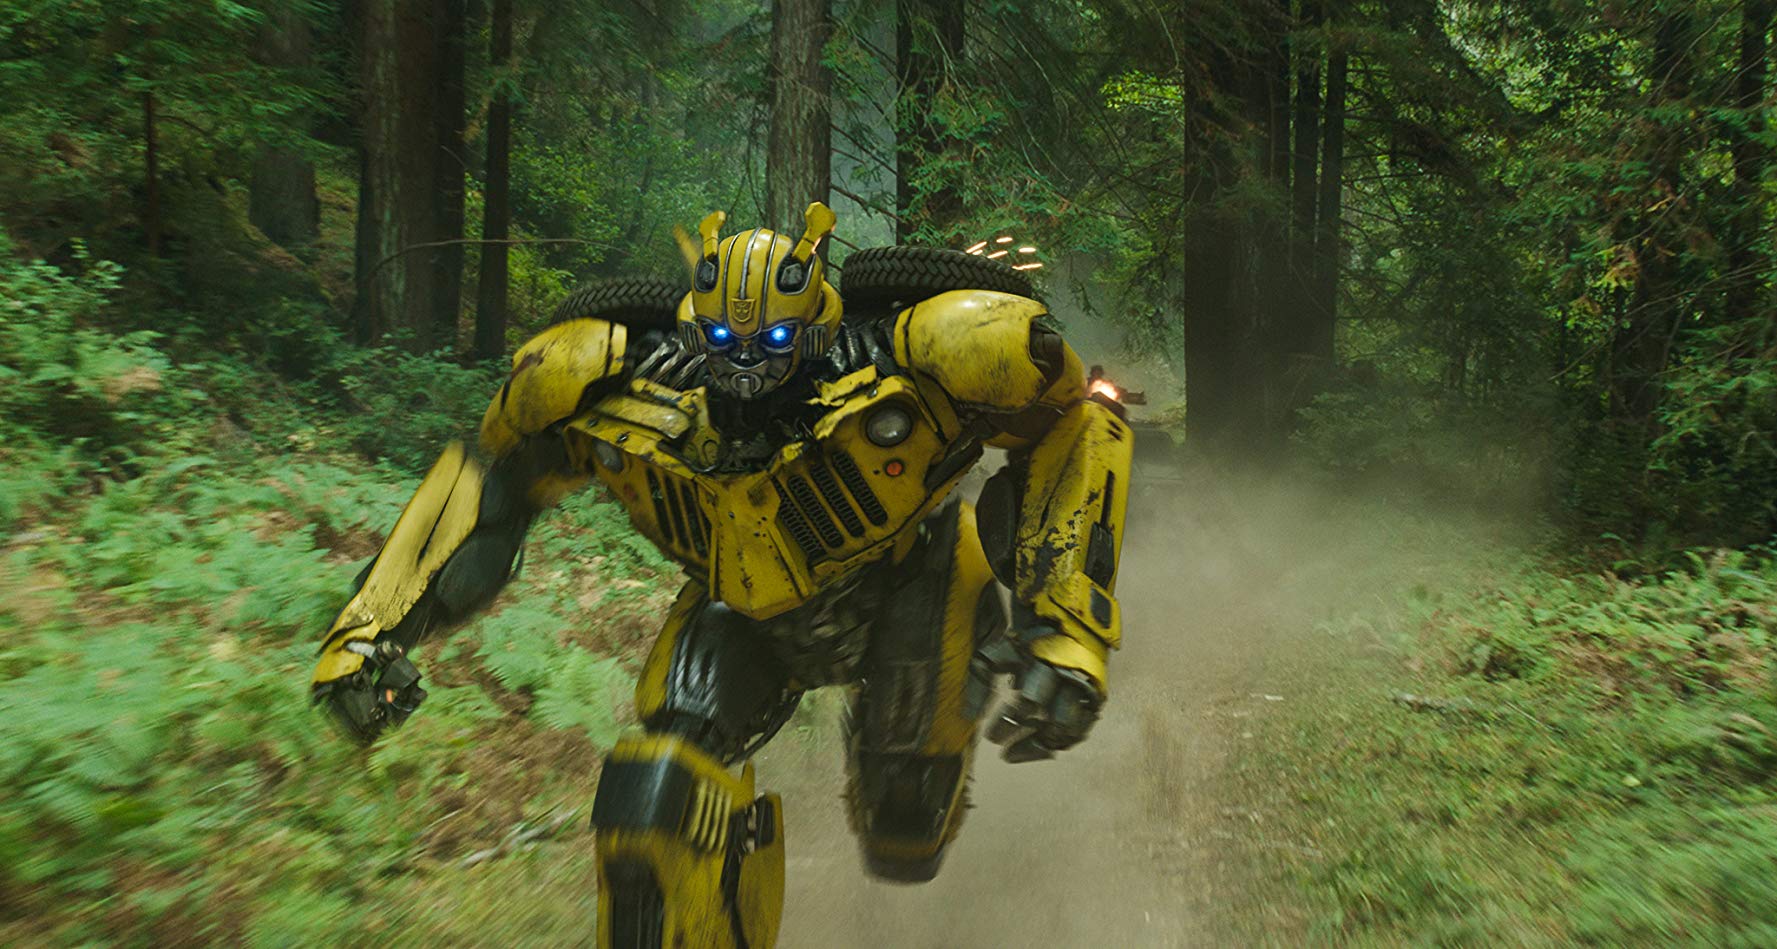 Màu sắc tươi mới và kỹ xảo mãn nhãn sẽ chinh phục những khán giả yêu thích các chú robot Transformers ảnh: Paramount Pictures